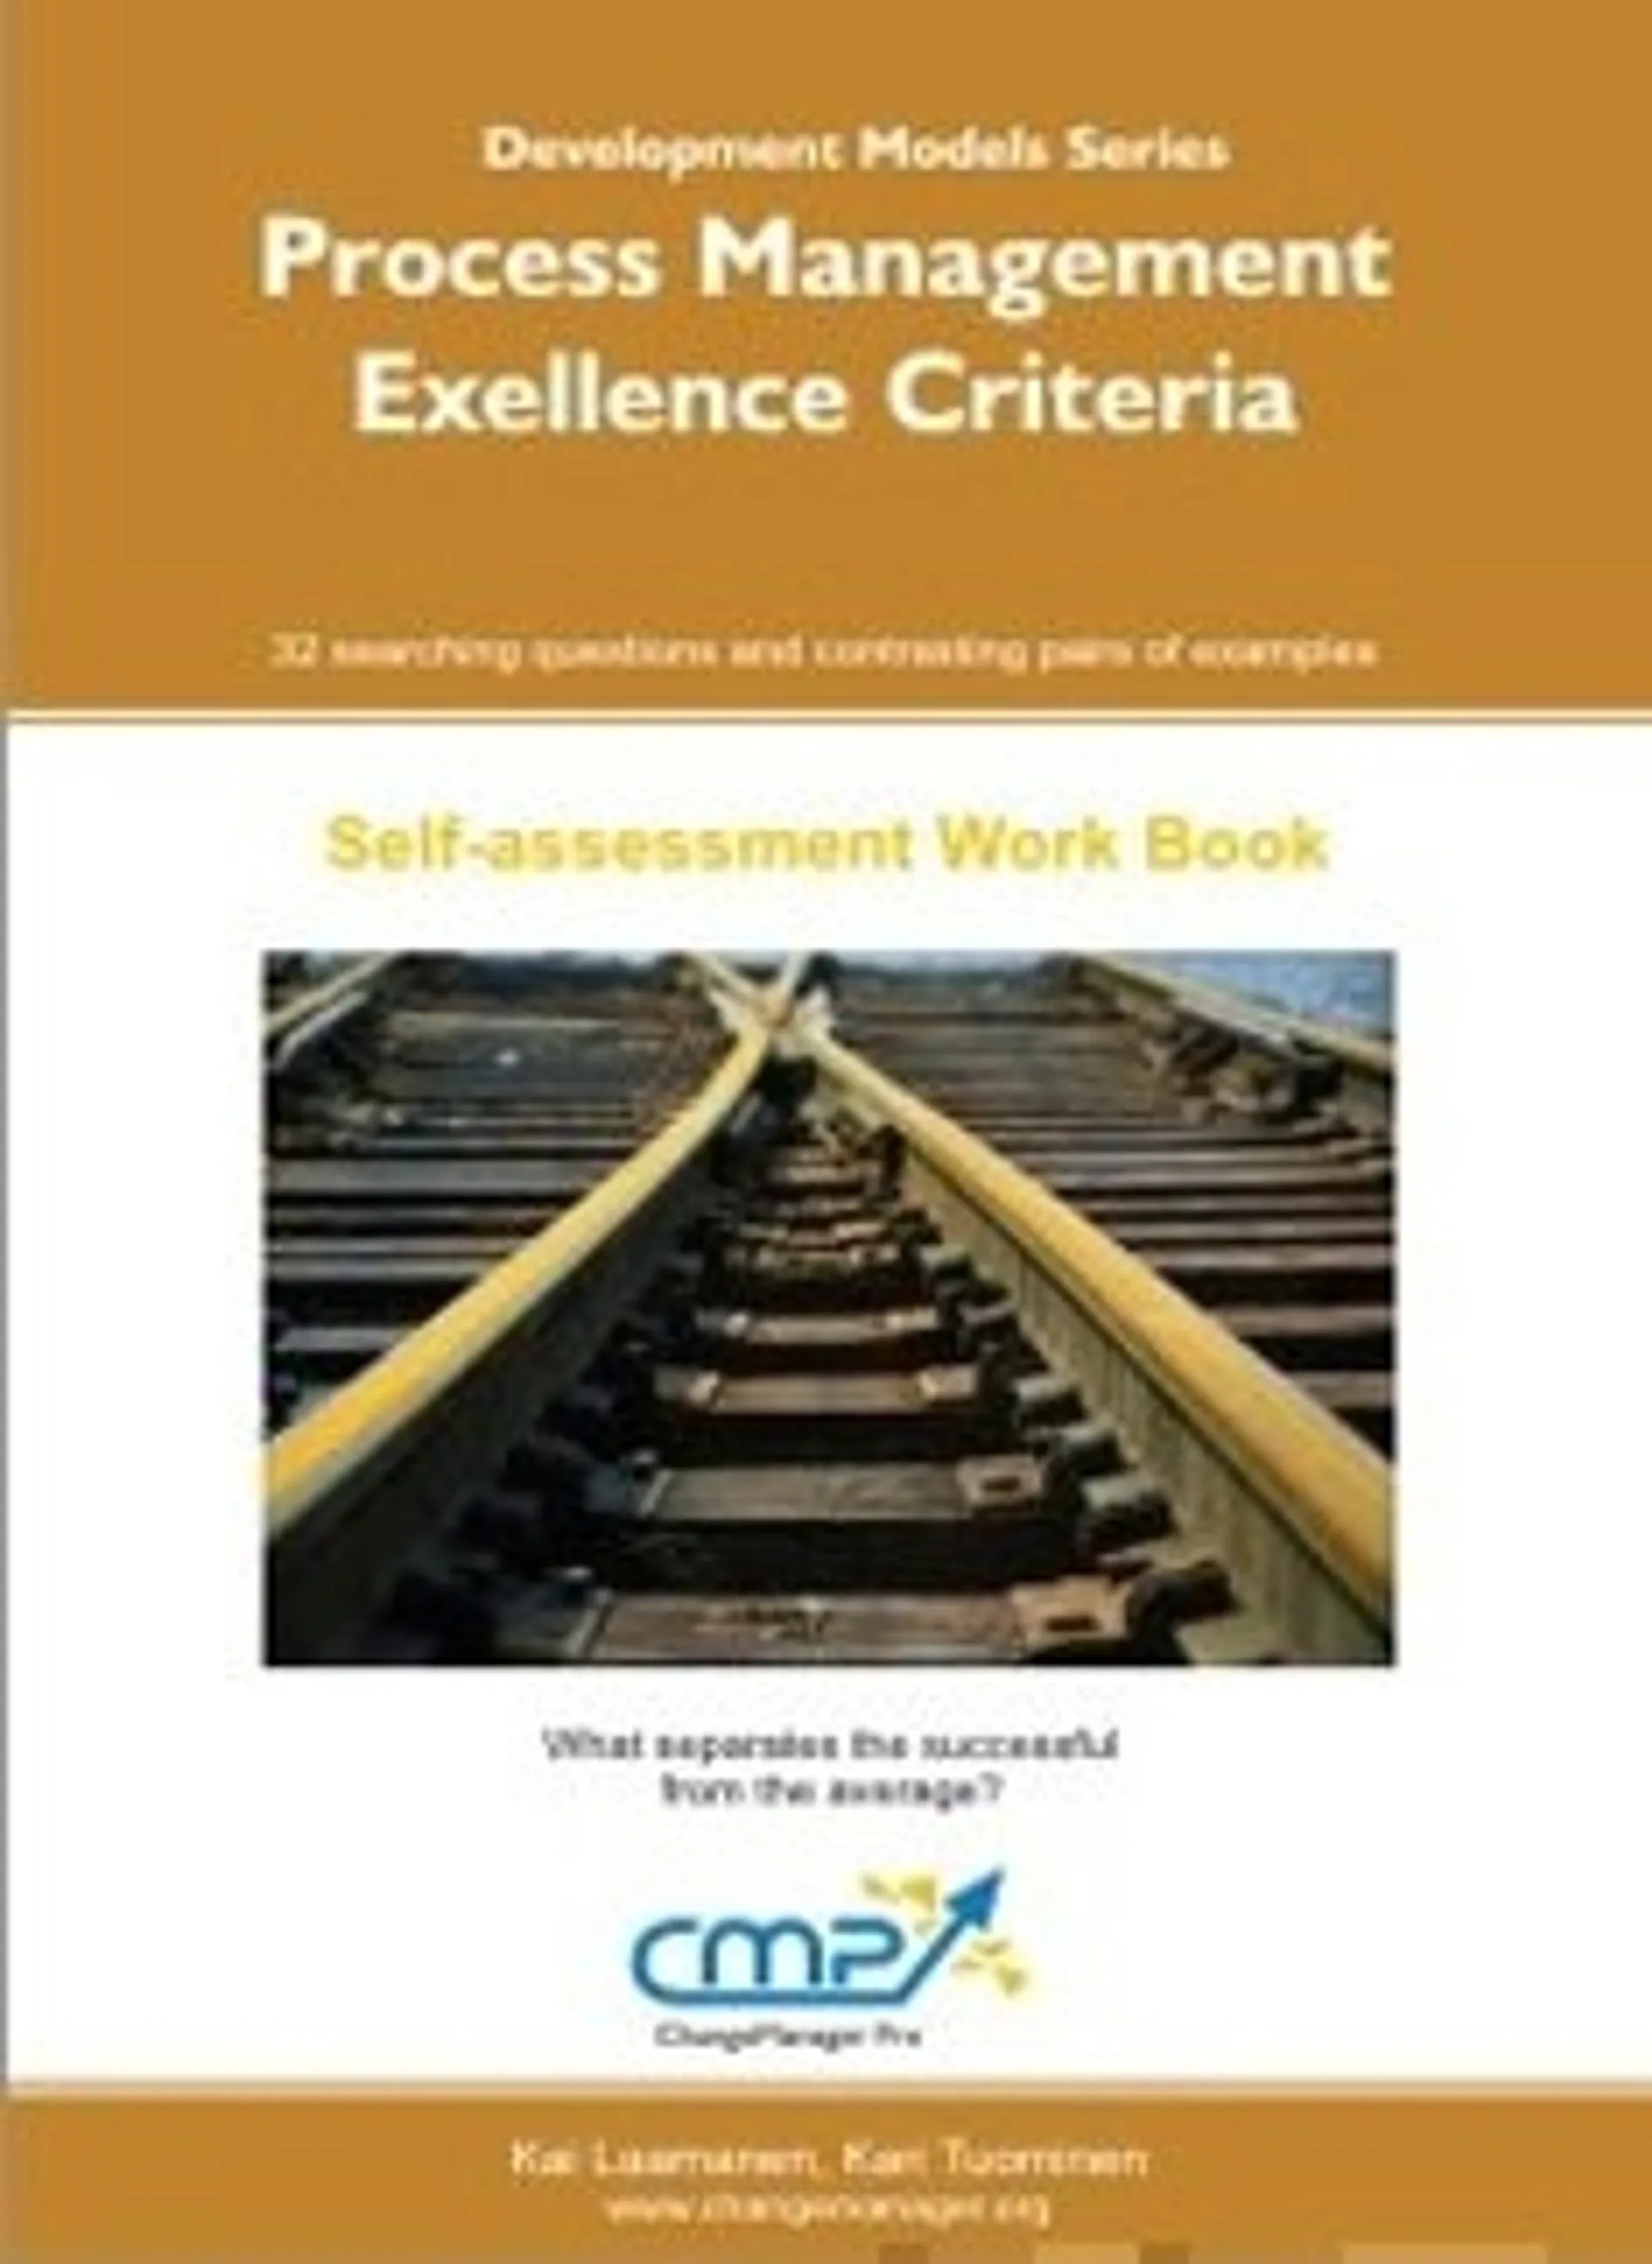 Process management - Excellence Criteria - EFQM 2010